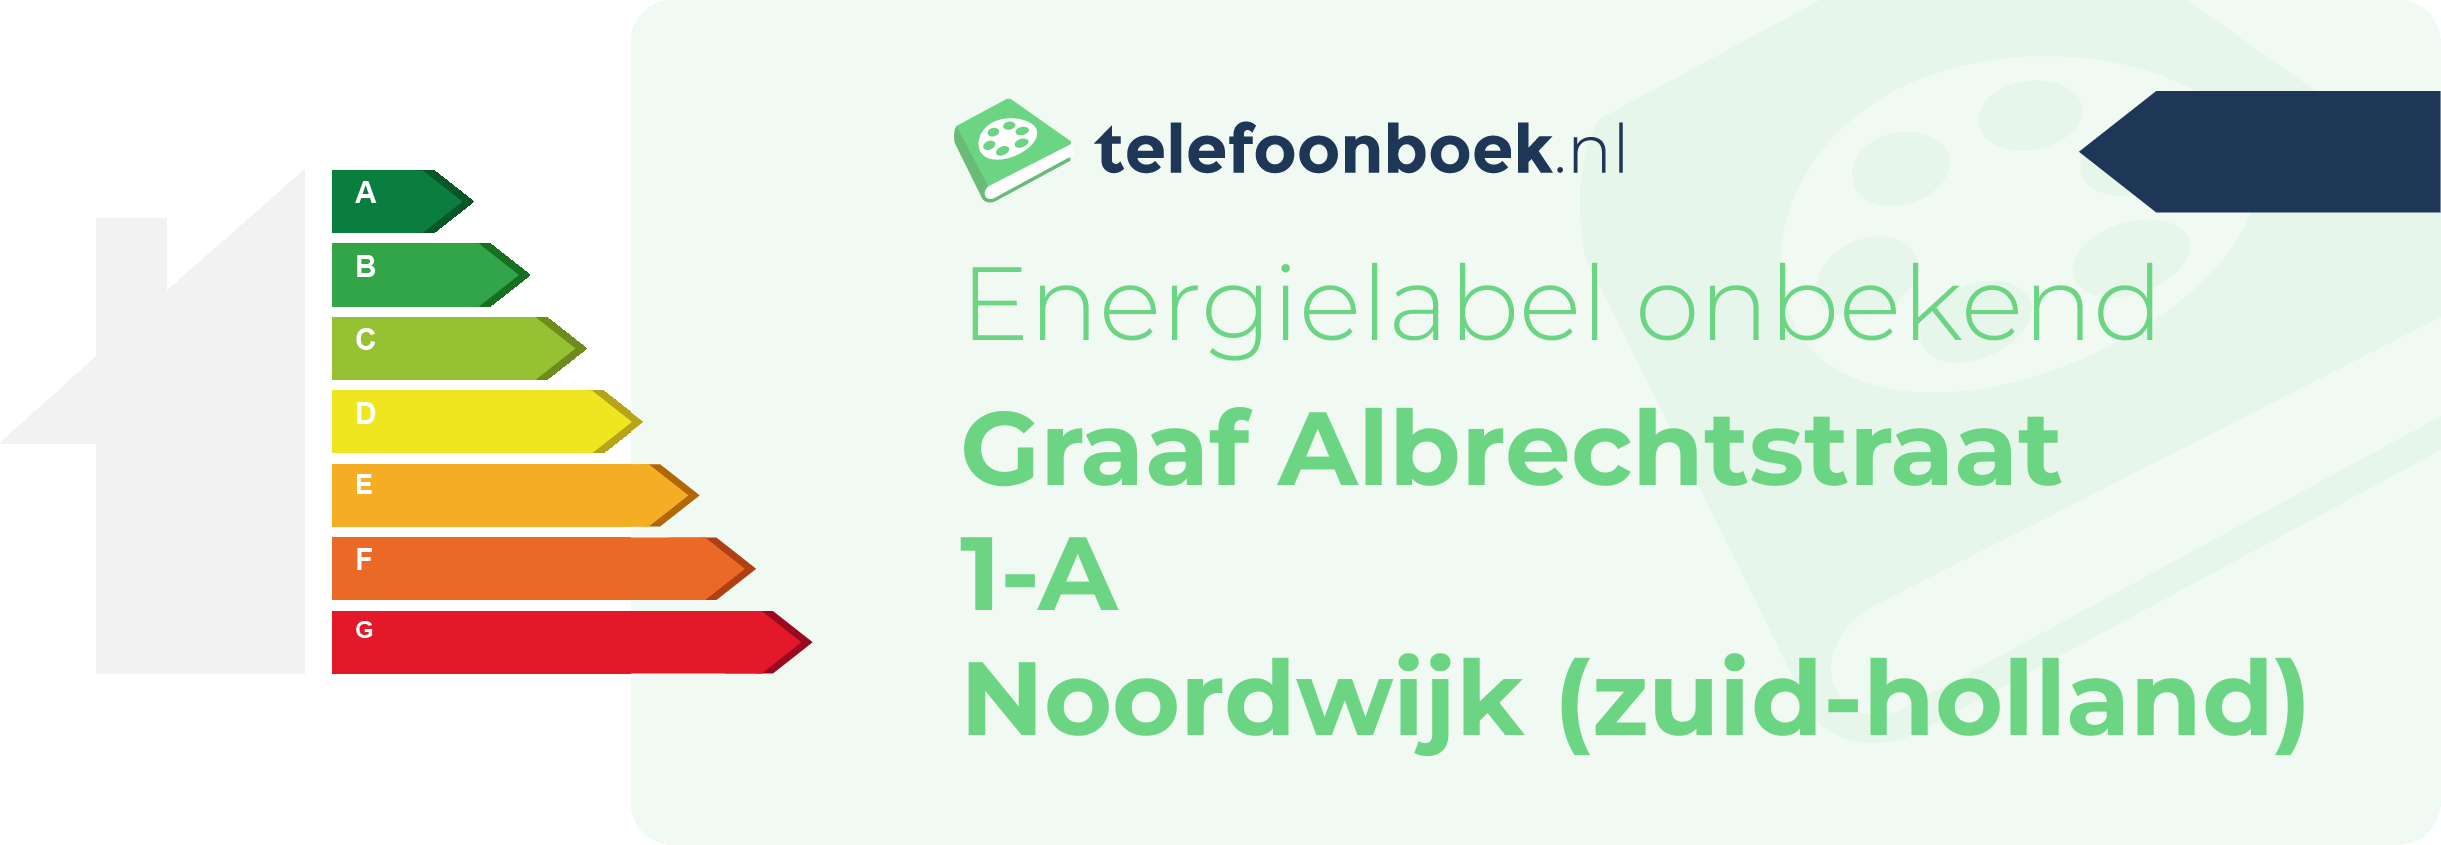 Energielabel Graaf Albrechtstraat 1-A Noordwijk (Zuid-Holland)